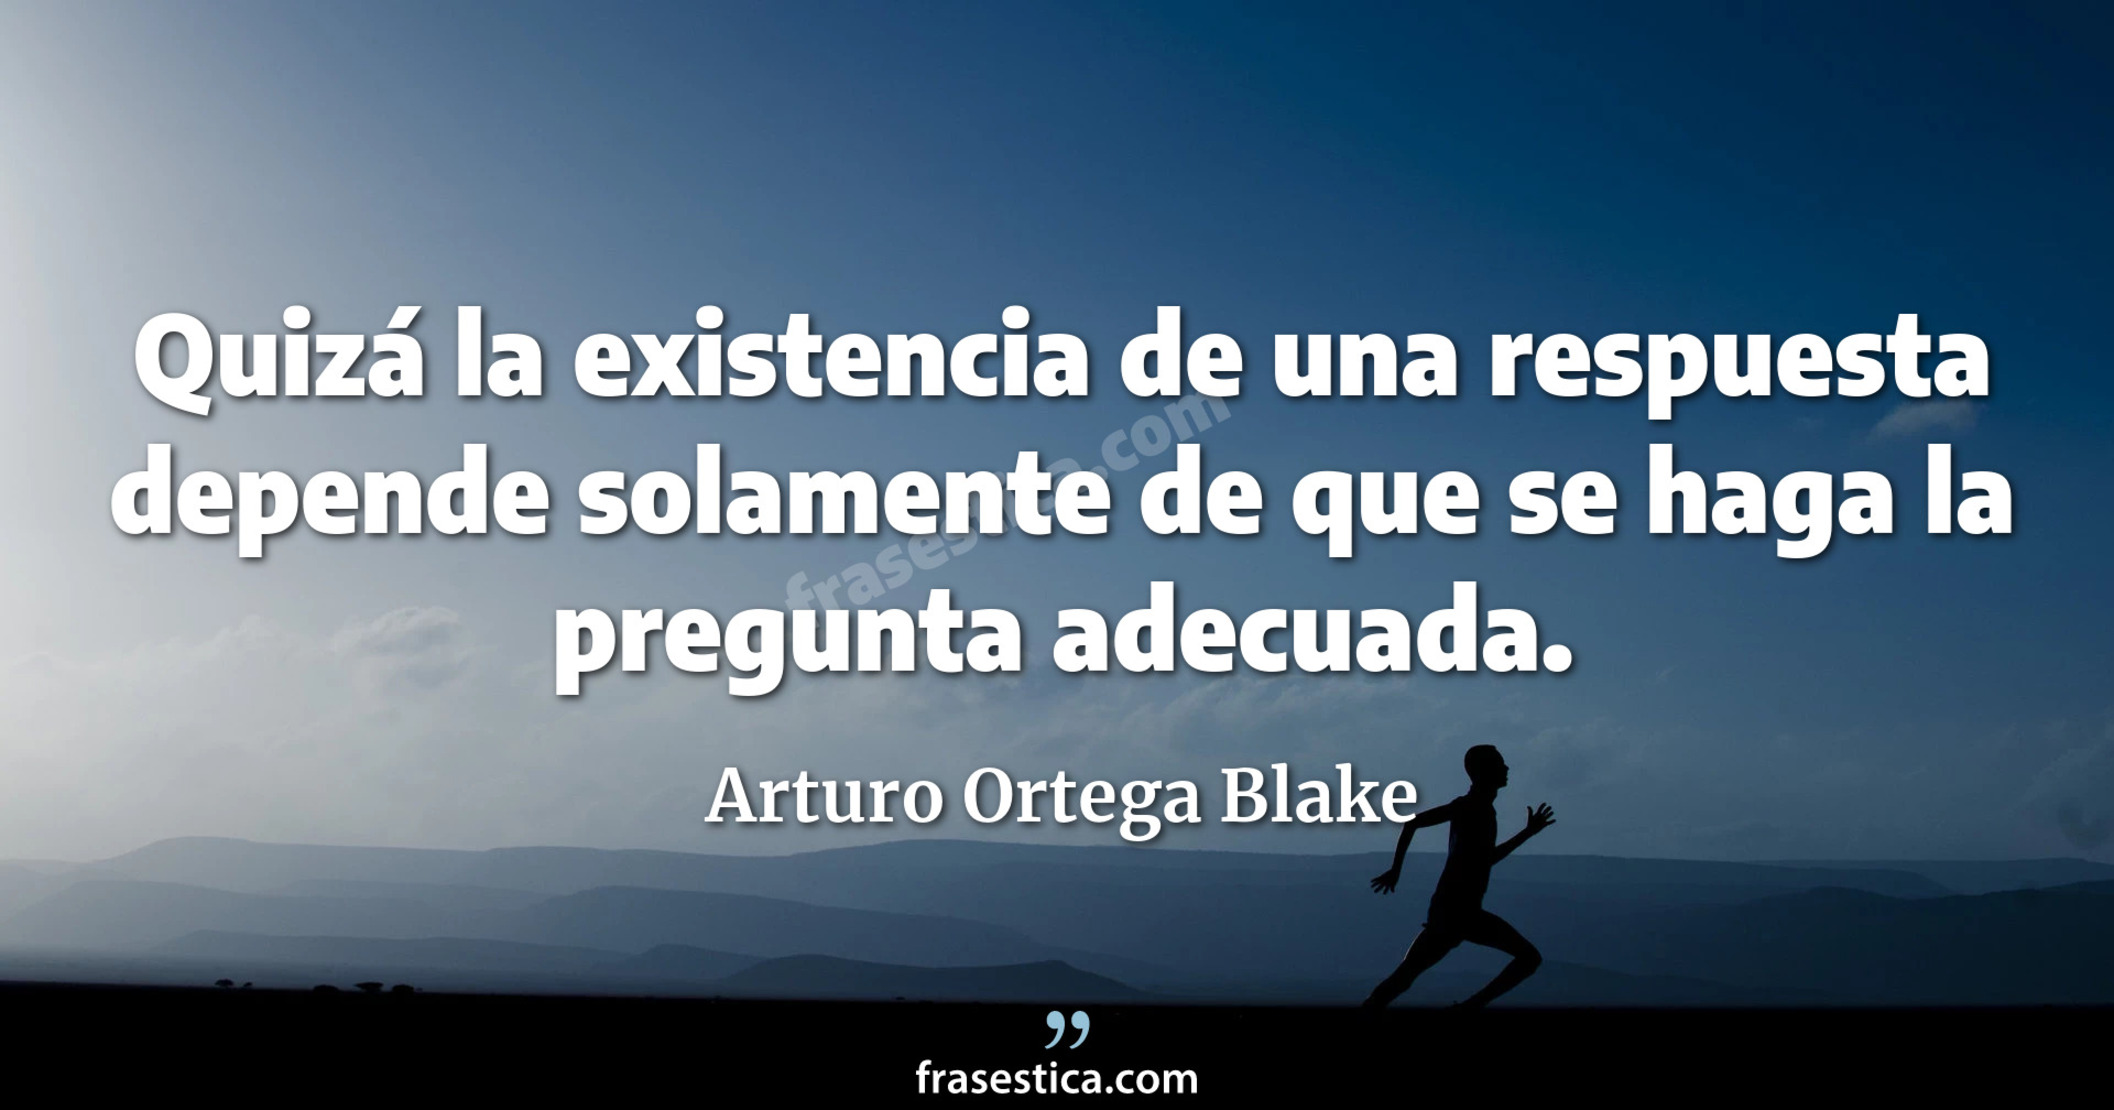 Quizá la existencia de una respuesta depende solamente de que se haga la pregunta adecuada. - Arturo Ortega Blake